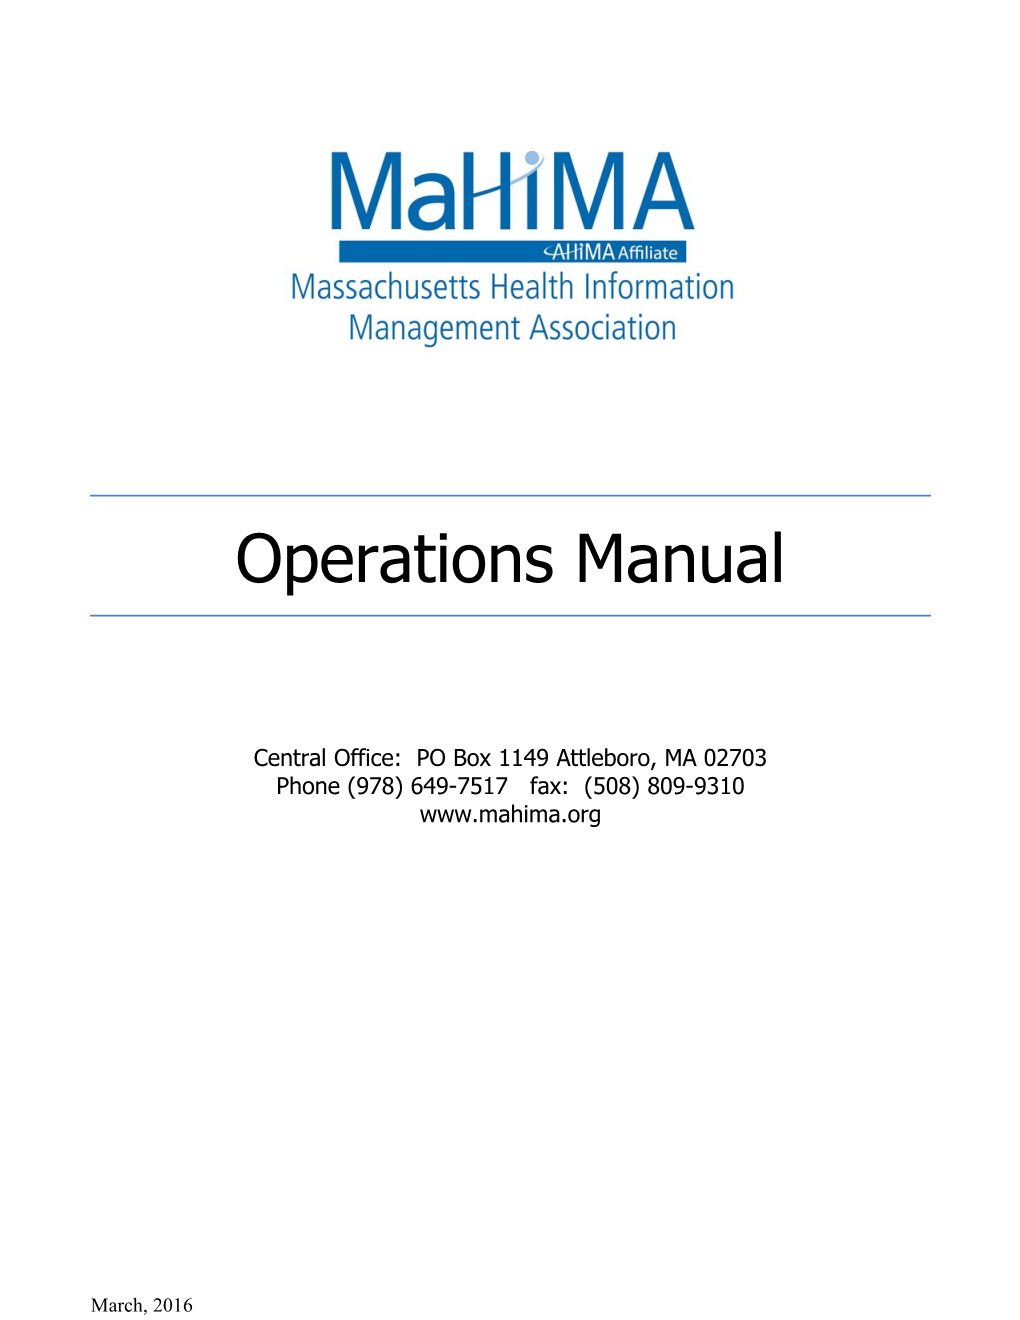 Mahima Operations Manual